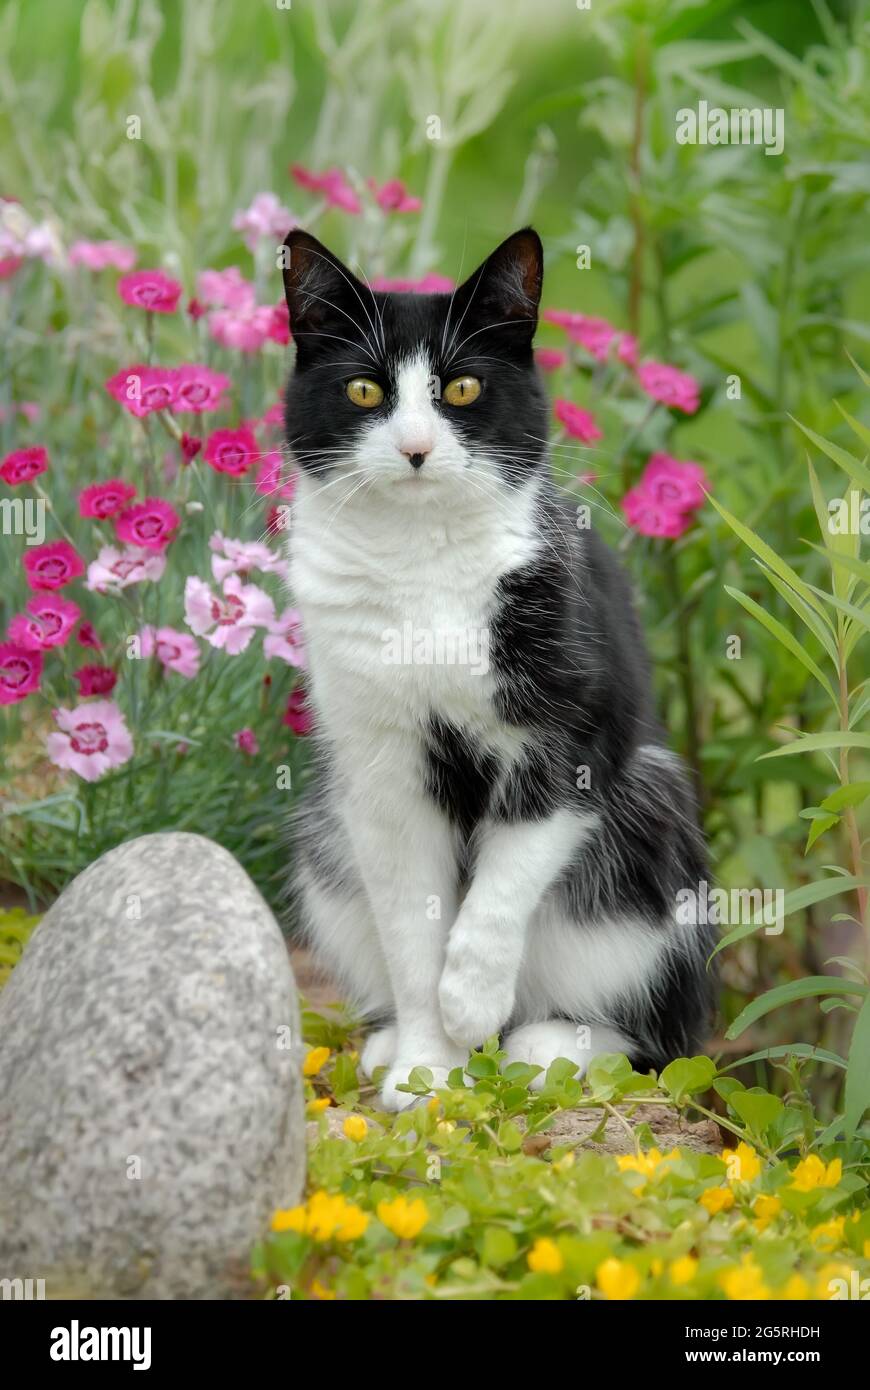 Gatto europeo Shorthair, modello tuxedo bicolore bianco e nero, in posa in un giardino con fiori rosa e gialli Foto Stock